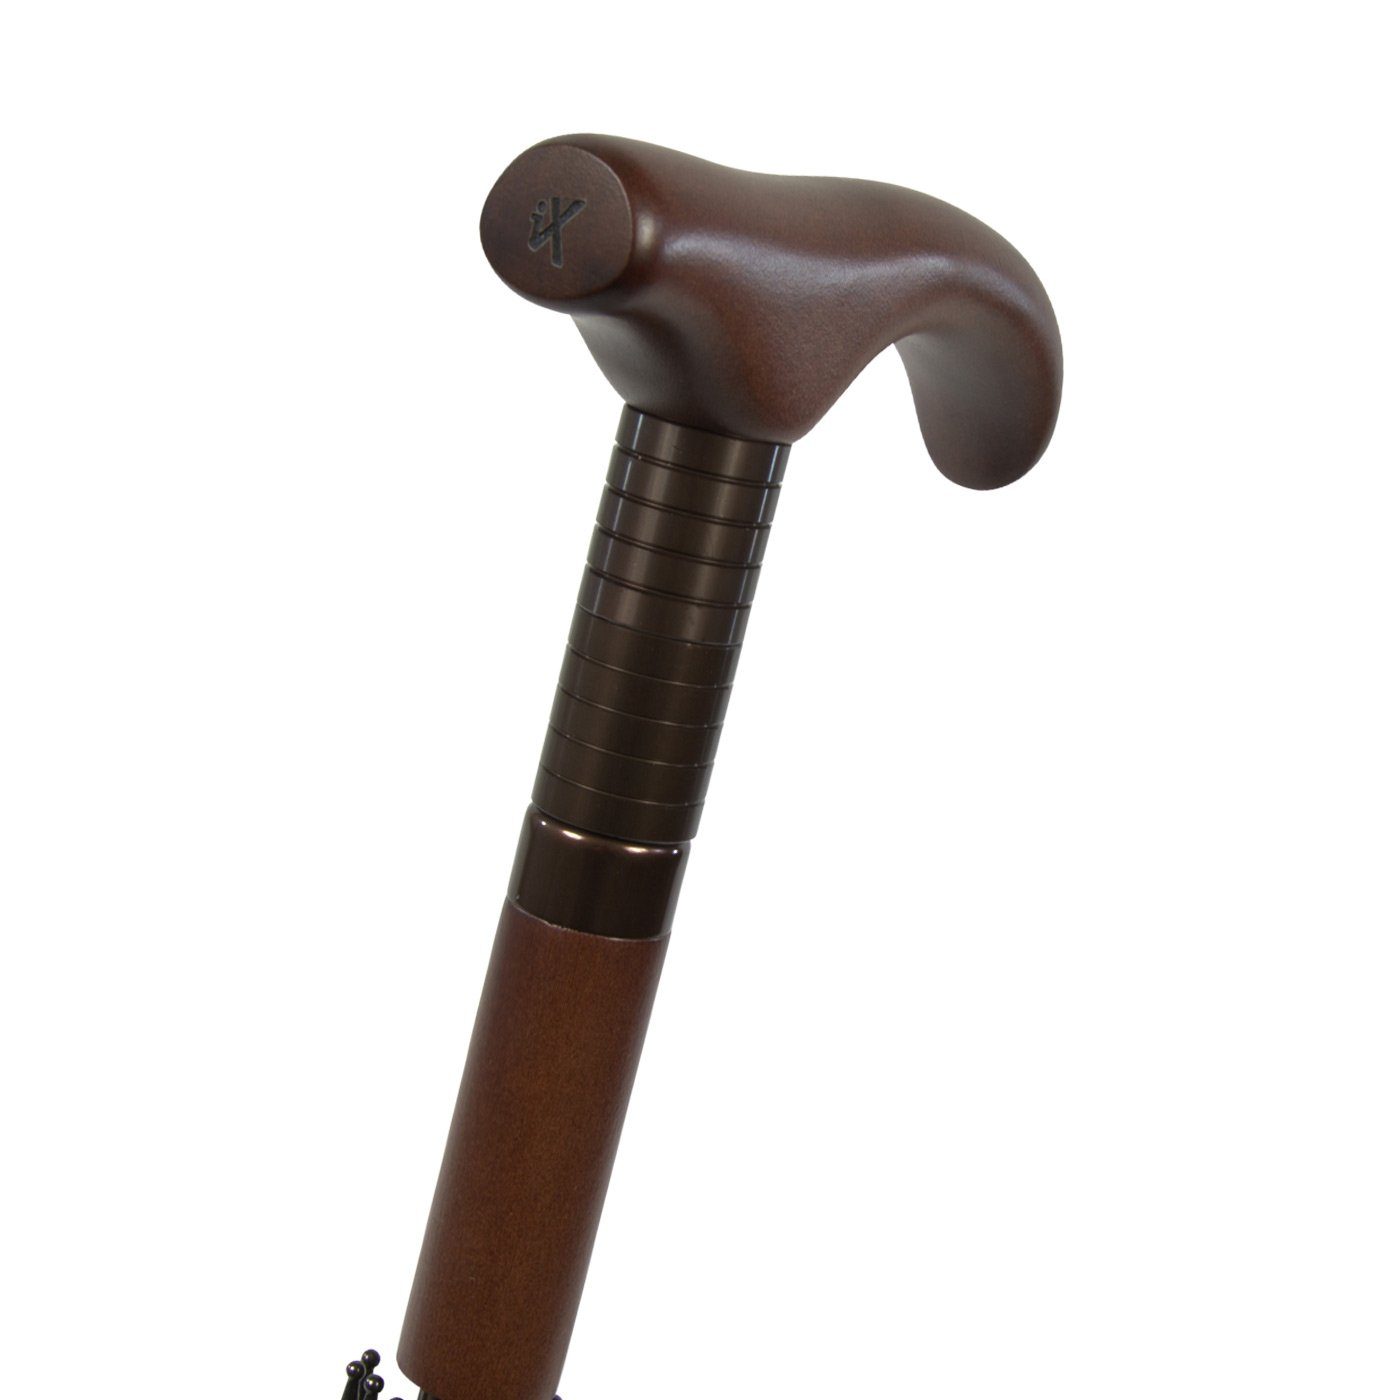 sehr Stützschirm stabil, klassisch Holzgriff beige kariert höhenverstellbar iX-brella Langregenschirm